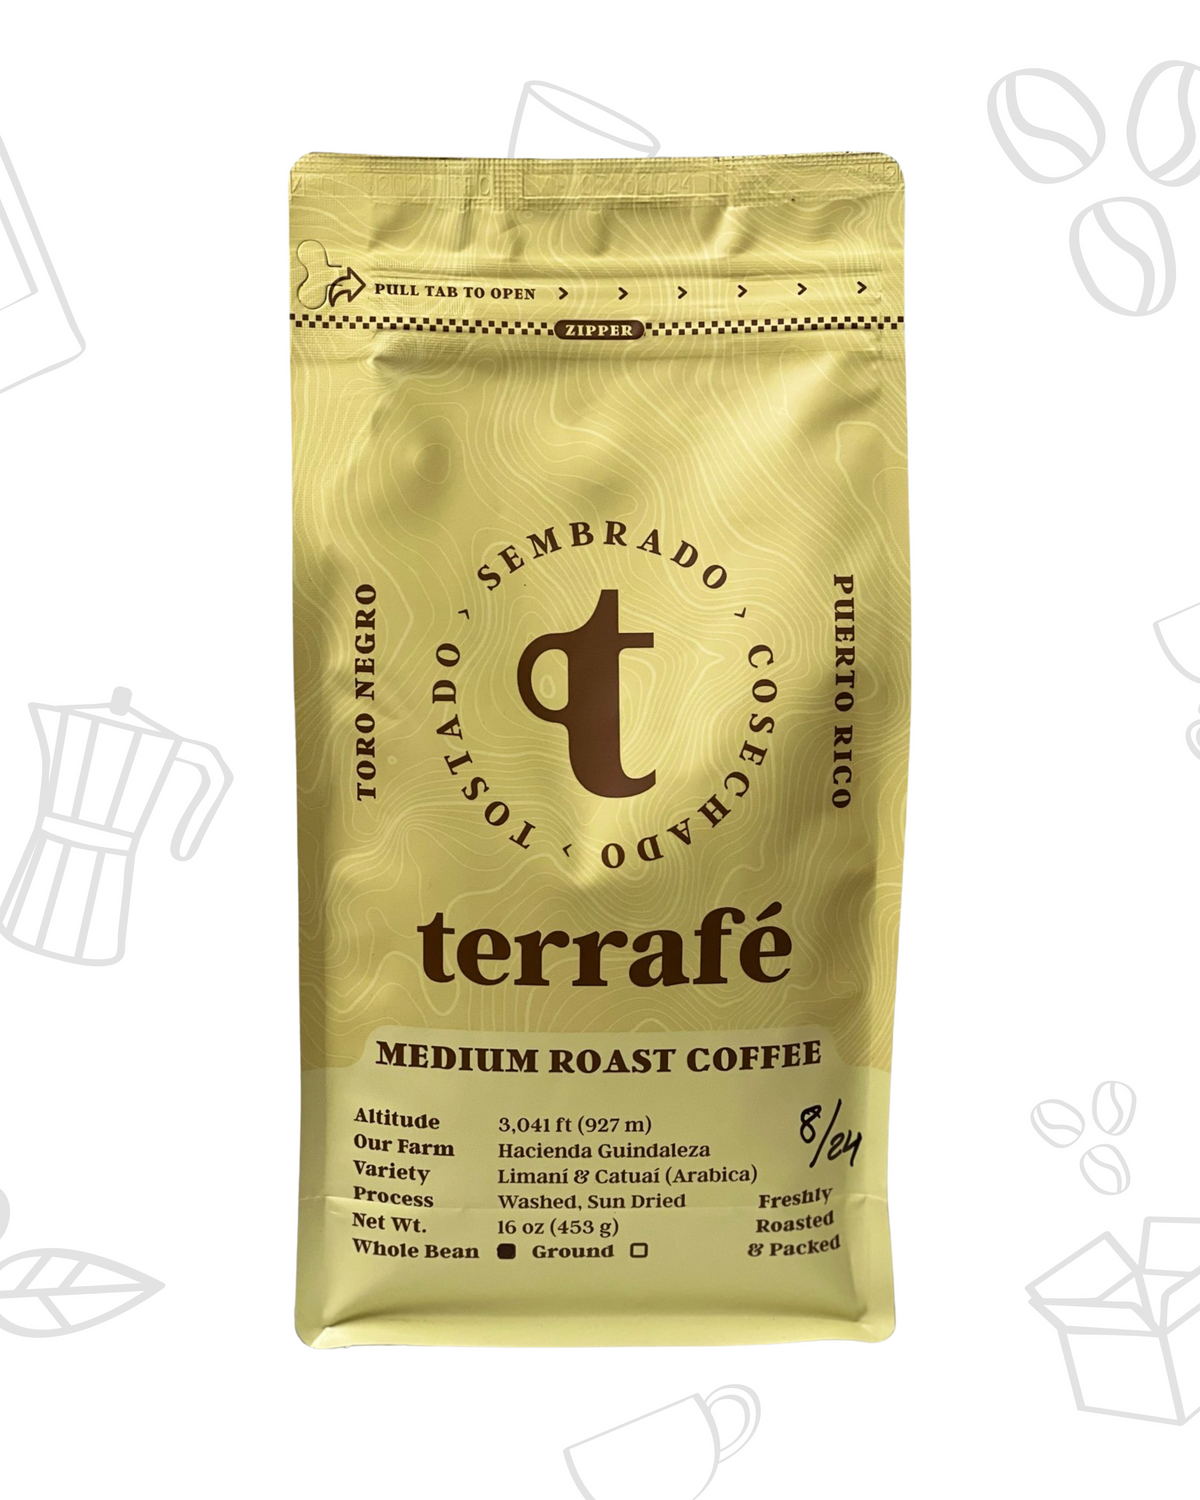 Café Terrafé - Medium Roast